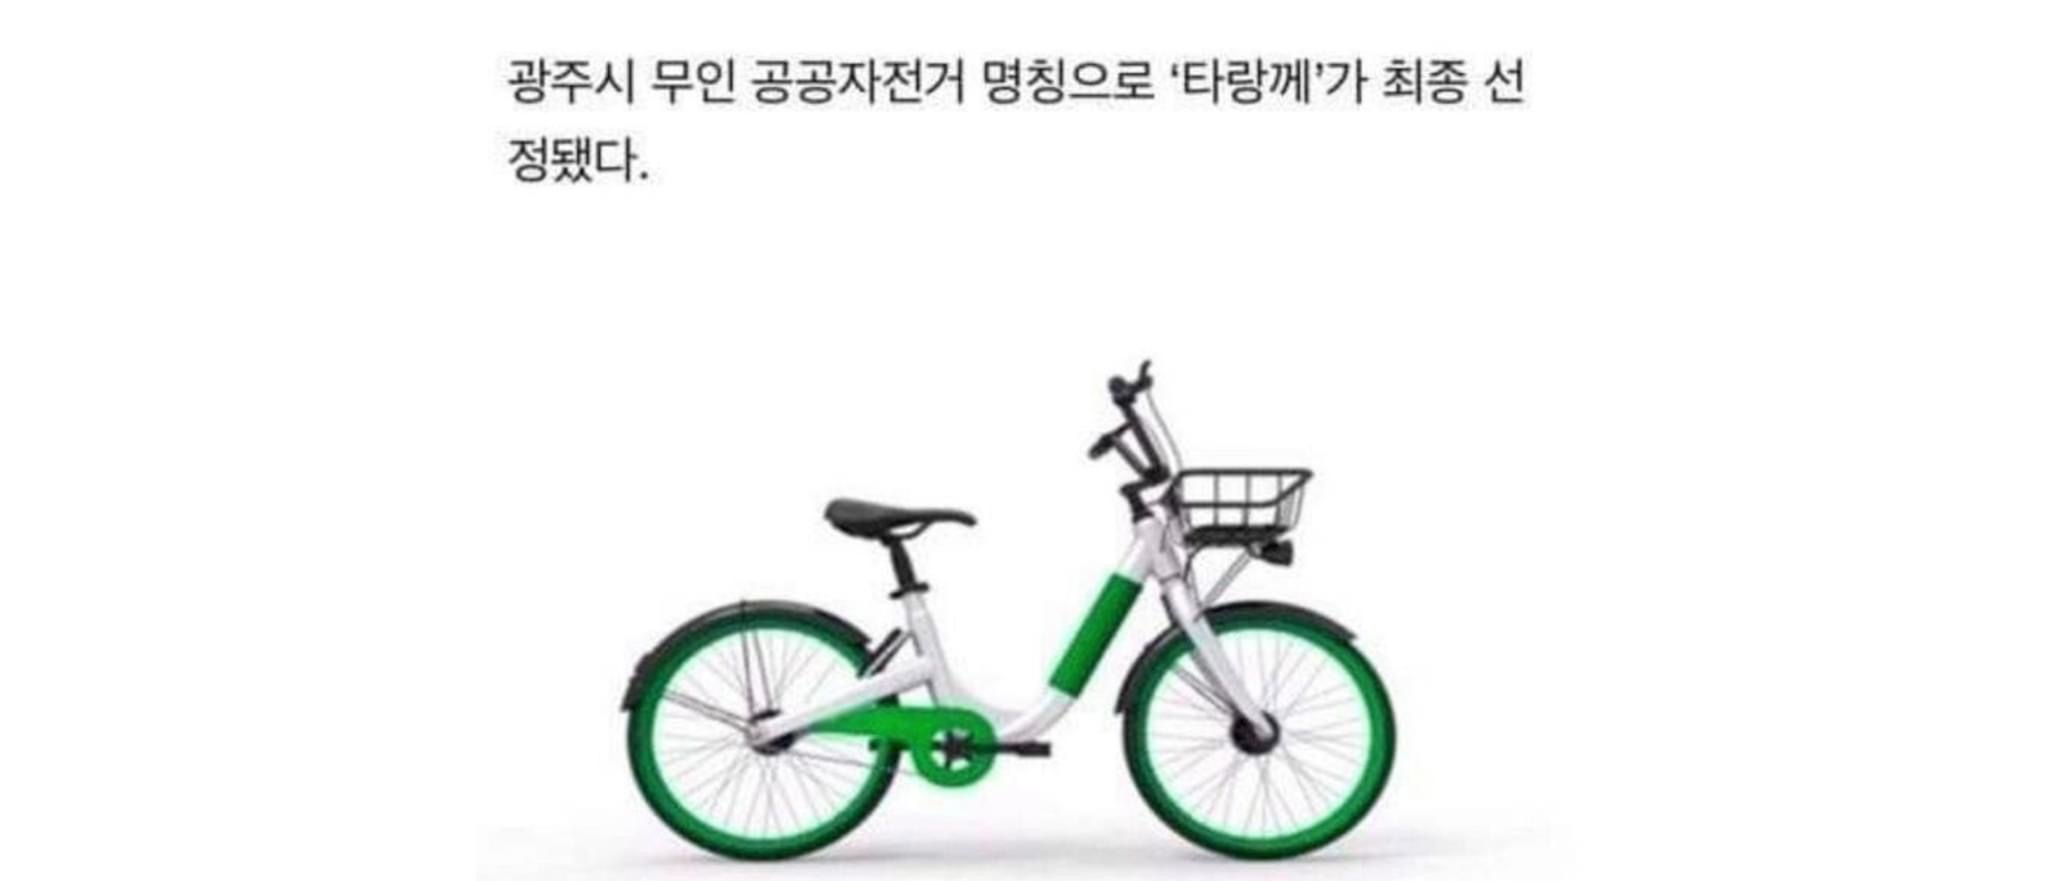 광주광역시 공공자전거 이름 '타랑께'로 채택됐는데 베플 ㅋㅋㅋㅋㅋ | 인스티즈